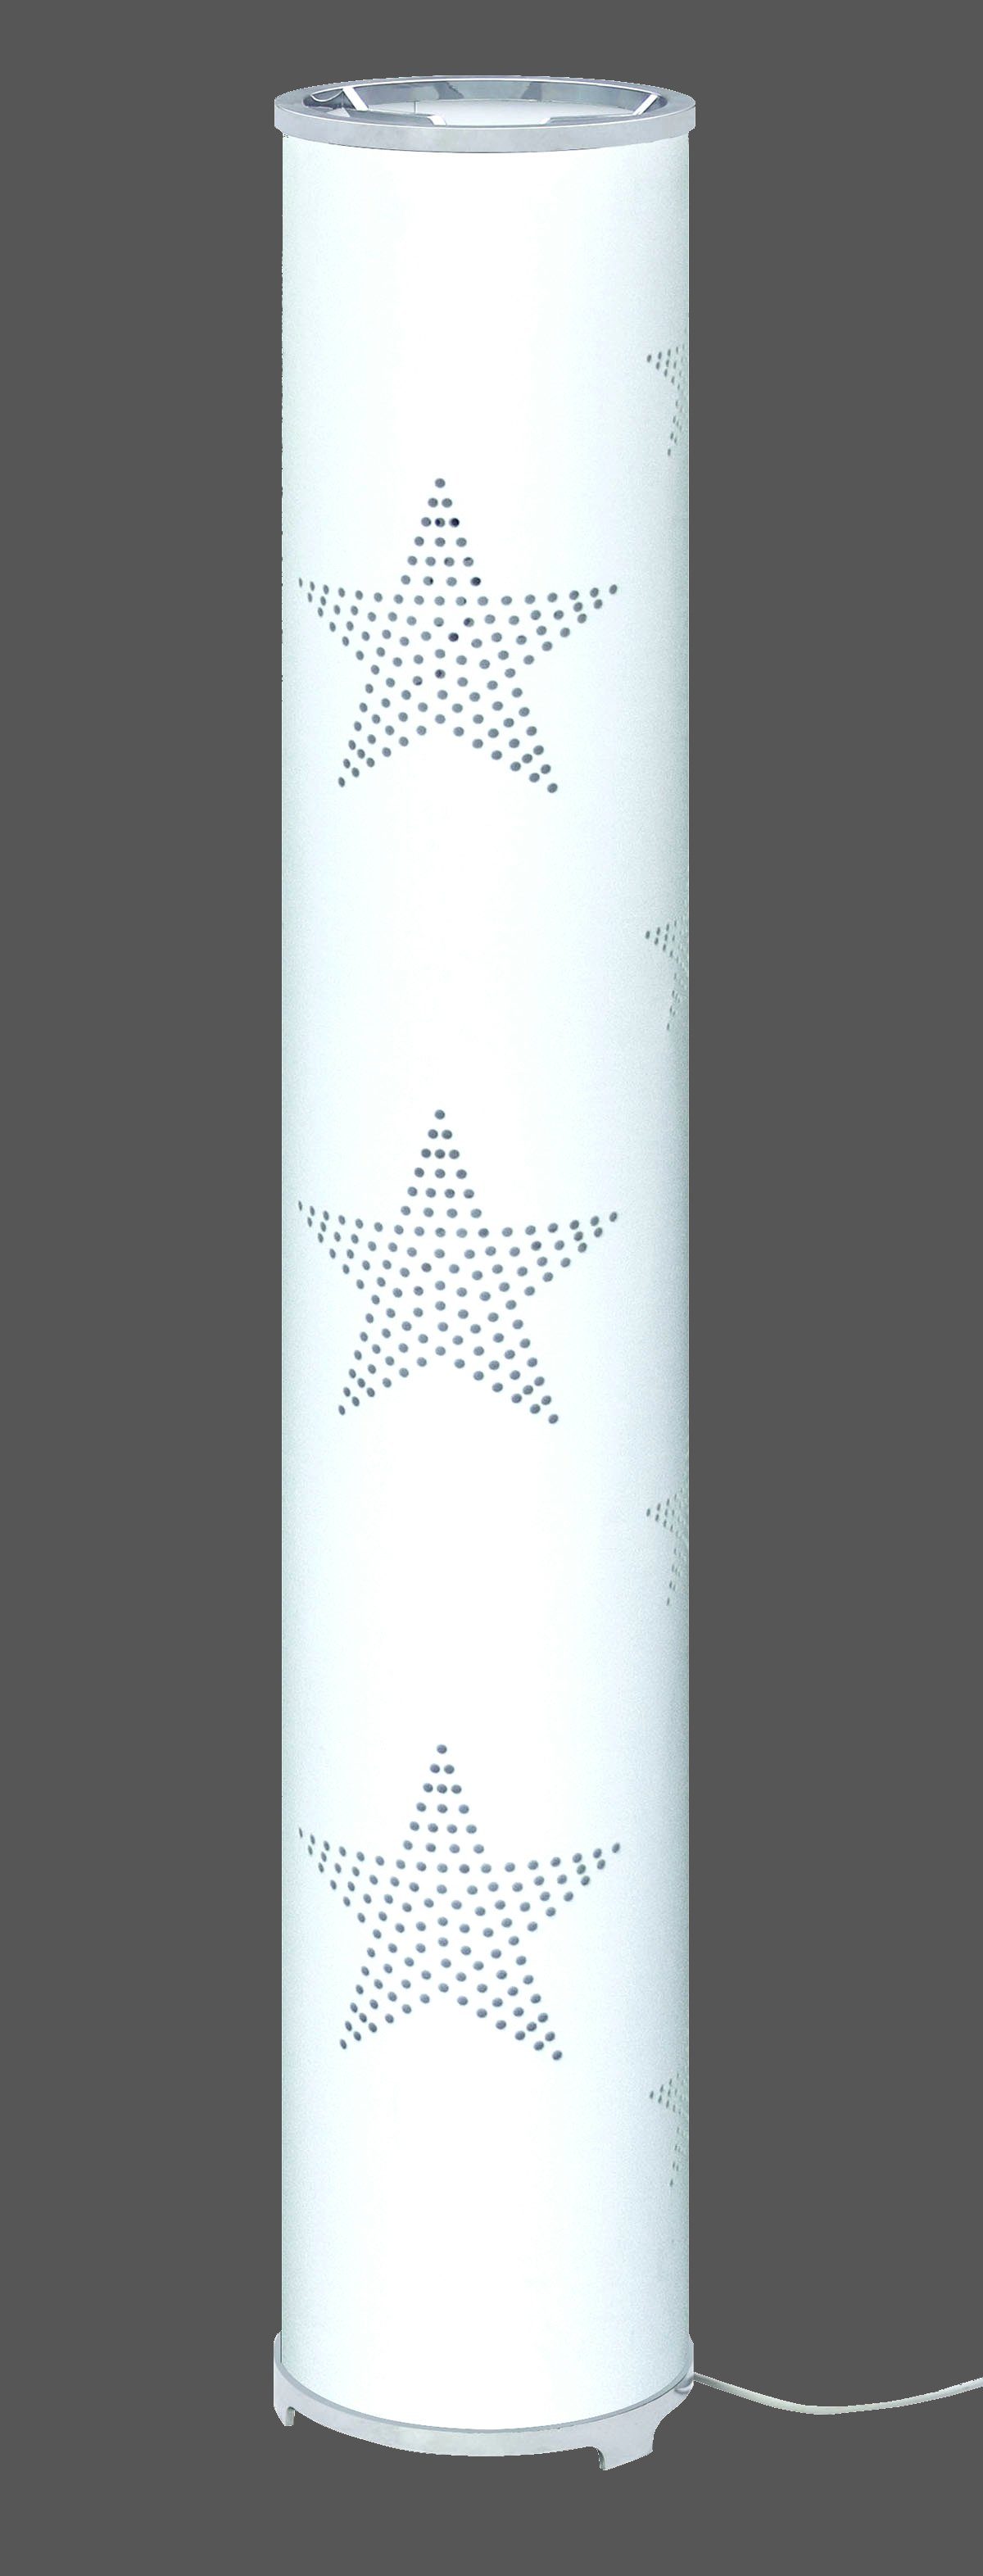 TRANGO LED Stehlampe, 1246L Modern Design Stehleuchte inkl. 2x E14 LED Leuchtmittel *STARS* Stehlampe mit Stoffschirm in WEISS mit Sternen-Dekor, Standleuchte, Deko-Stehlampe, Wohnzimmer Lampe, Höhe ca. 100cm